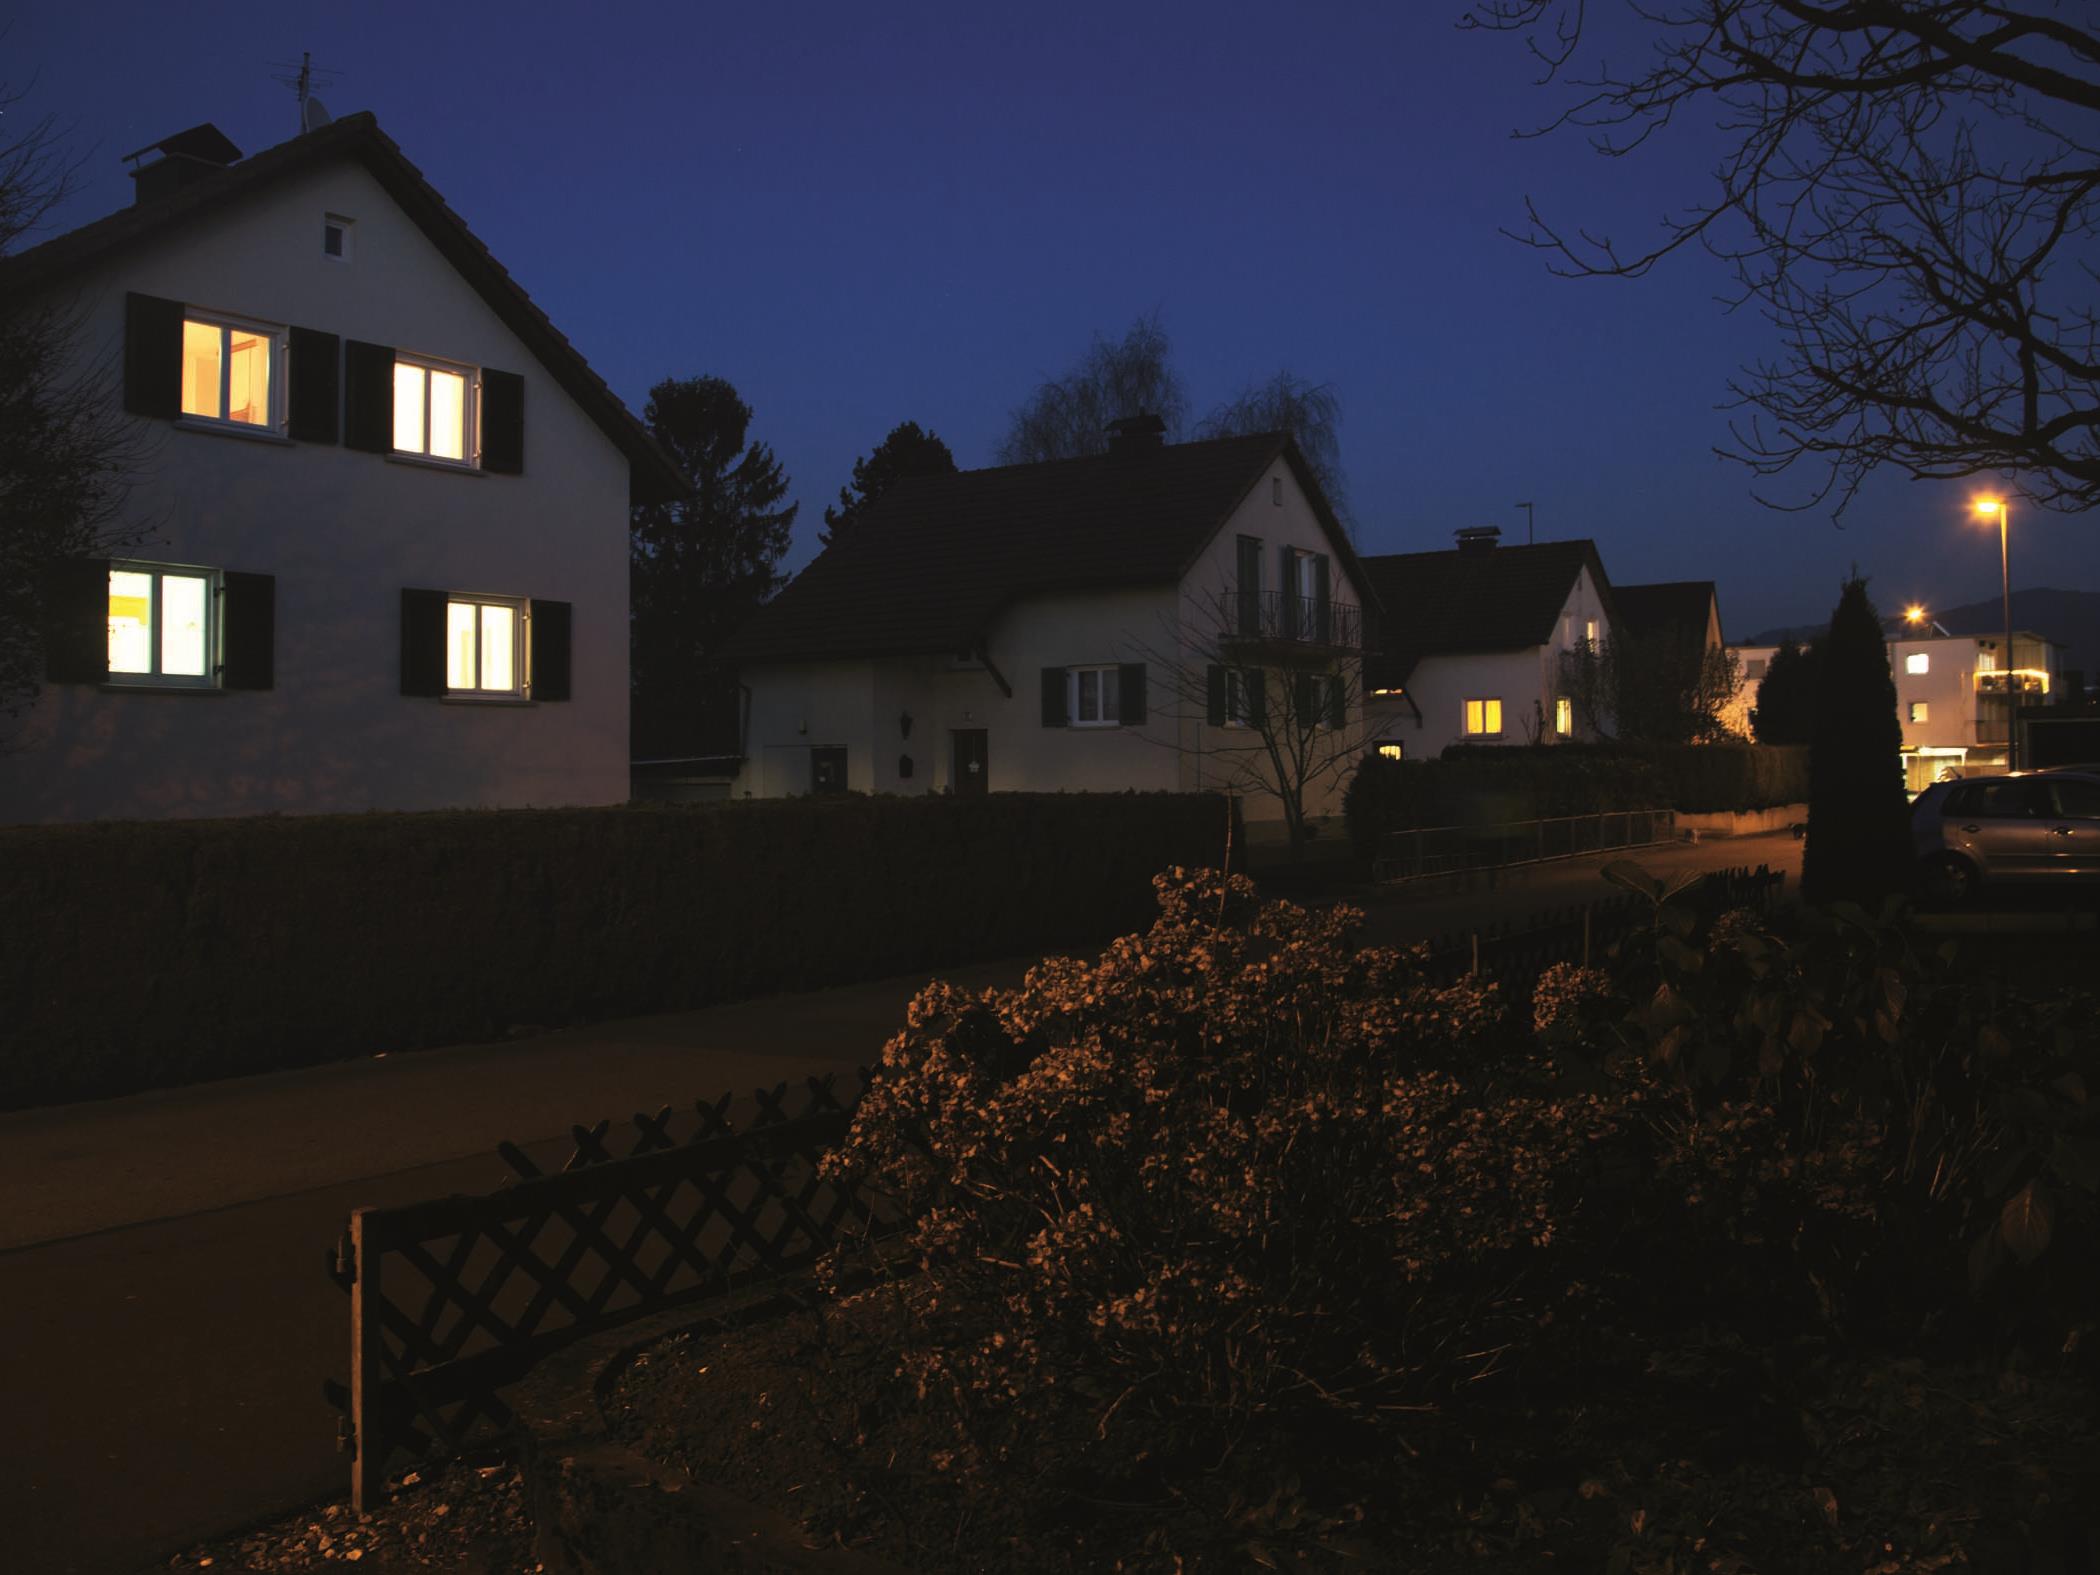 Die automatische Beleuchtung mit LEDON Guard hilft, dass die Aufmerksamkeit von Einbrechern nicht auf ein unbeleuchtetes Haus fällt.